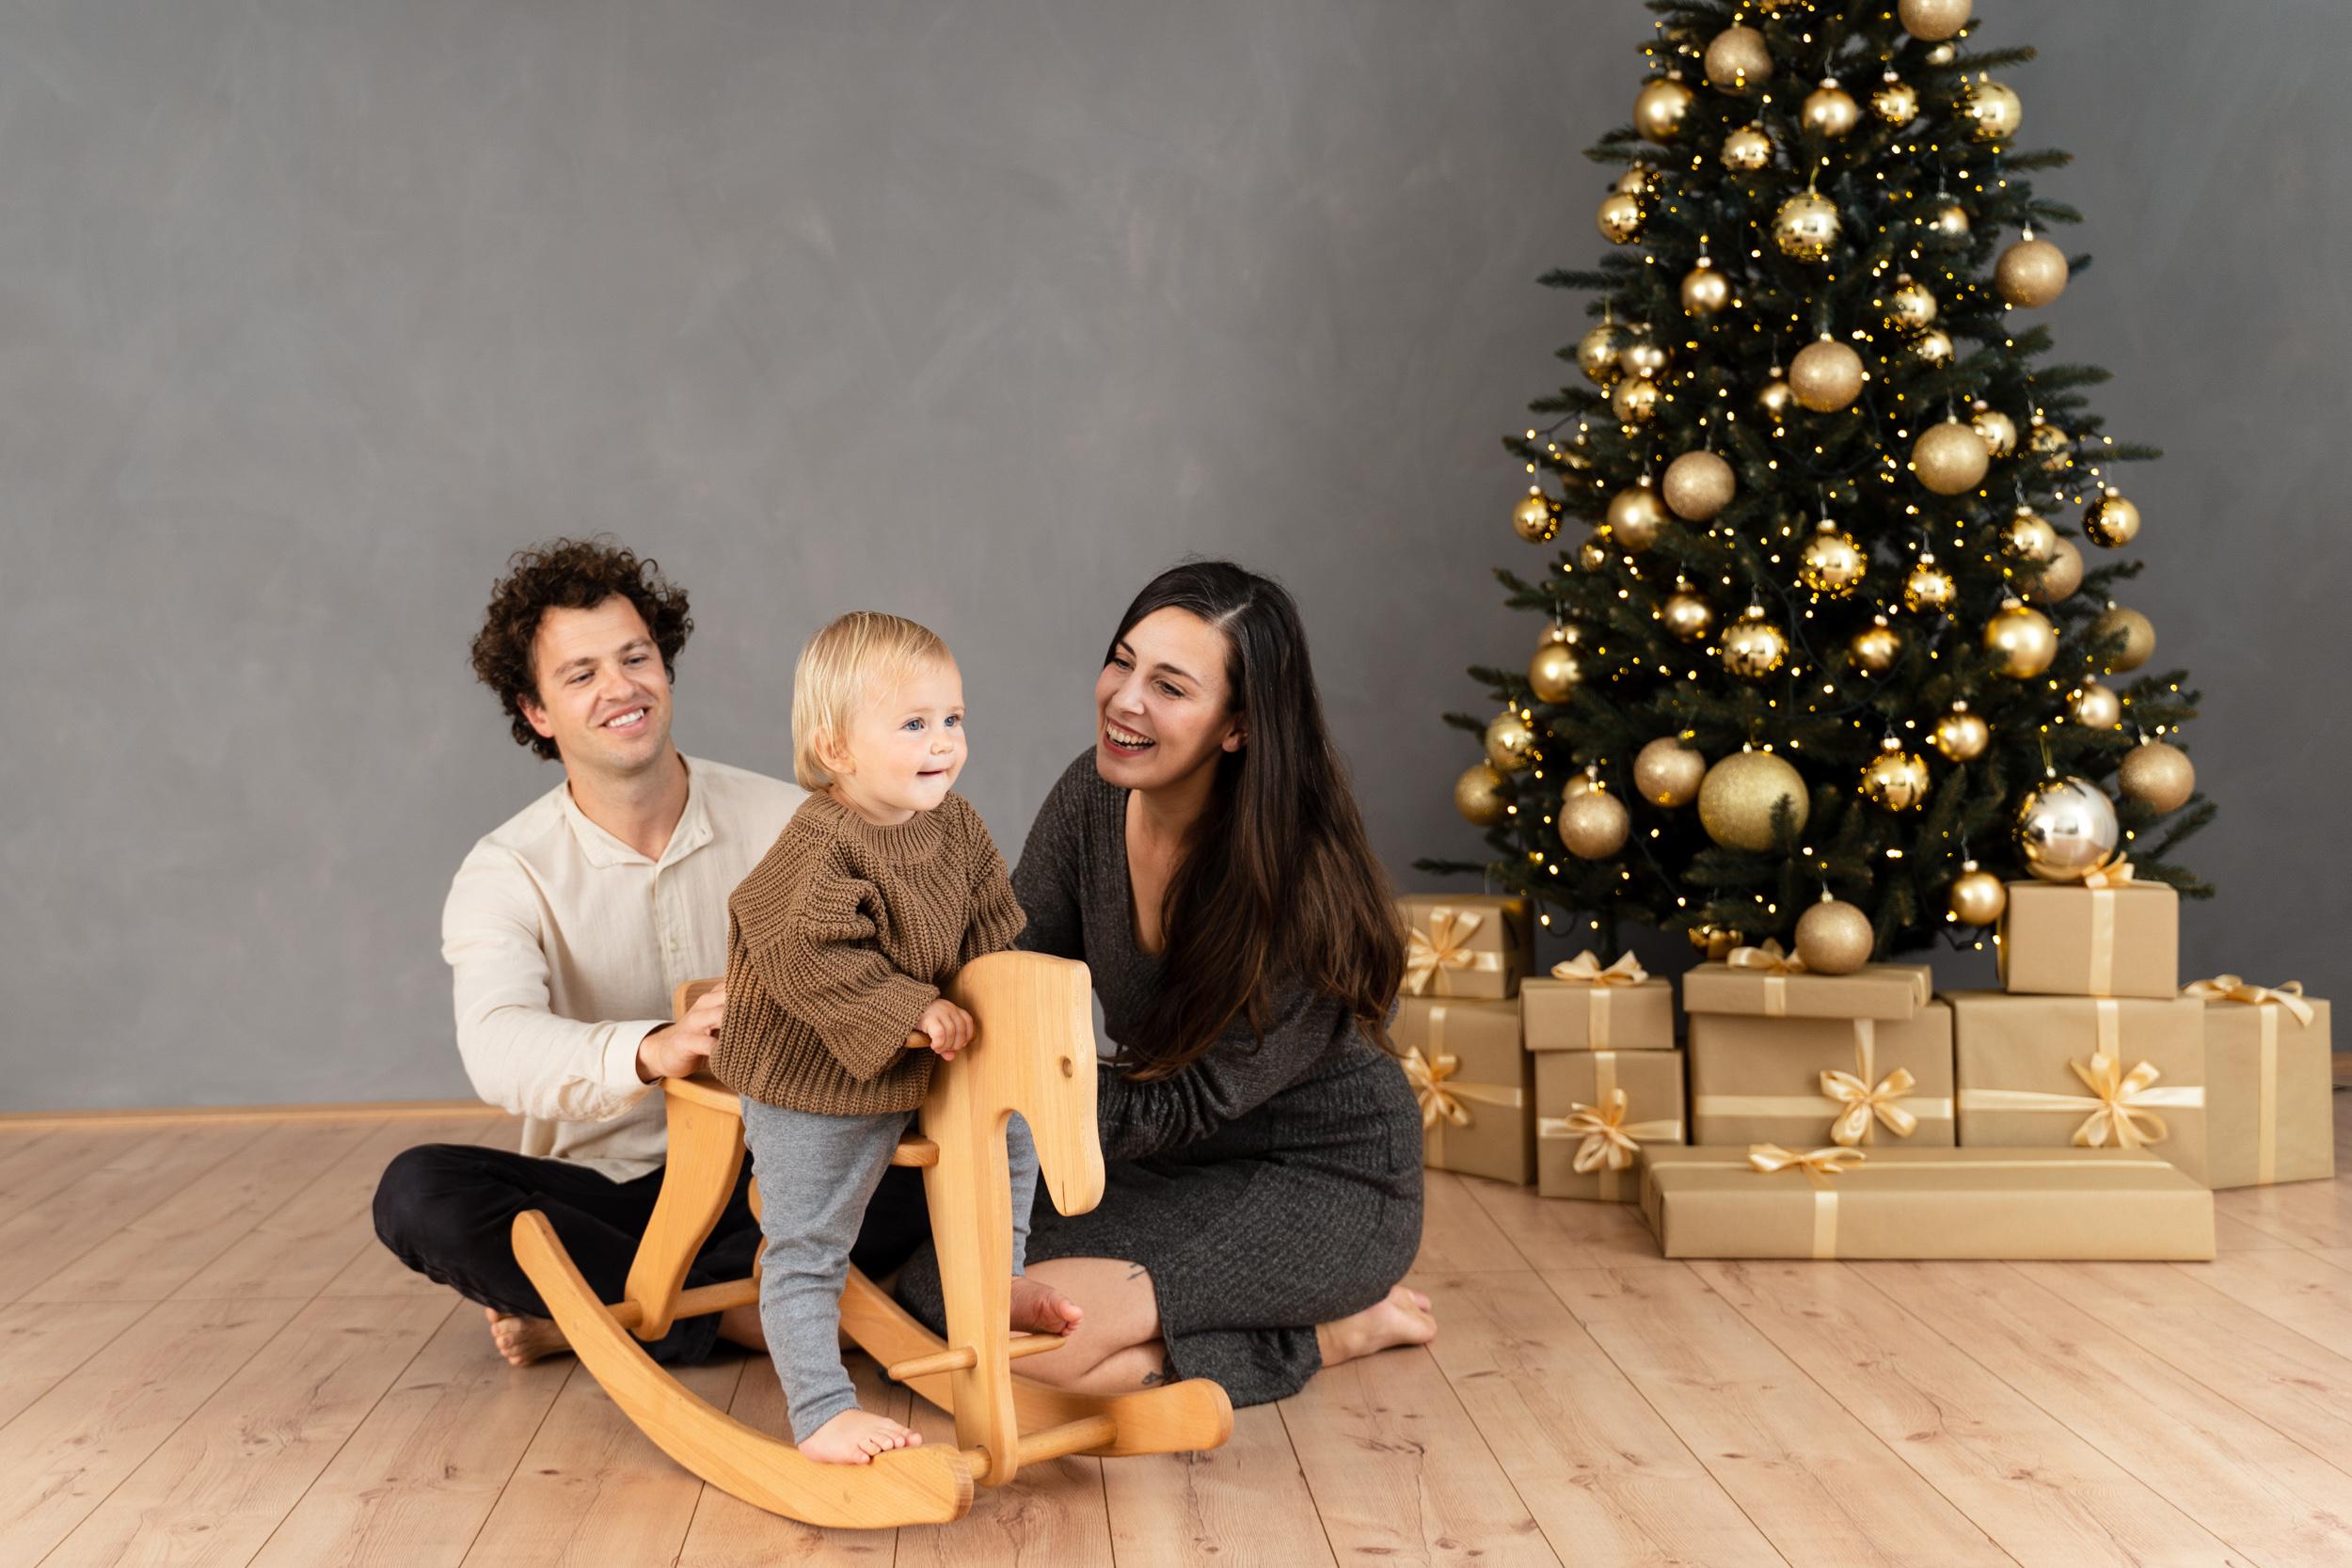 Zabavno božično fotografiranje za vso družino. Fotostudio v Ljubljani 2023